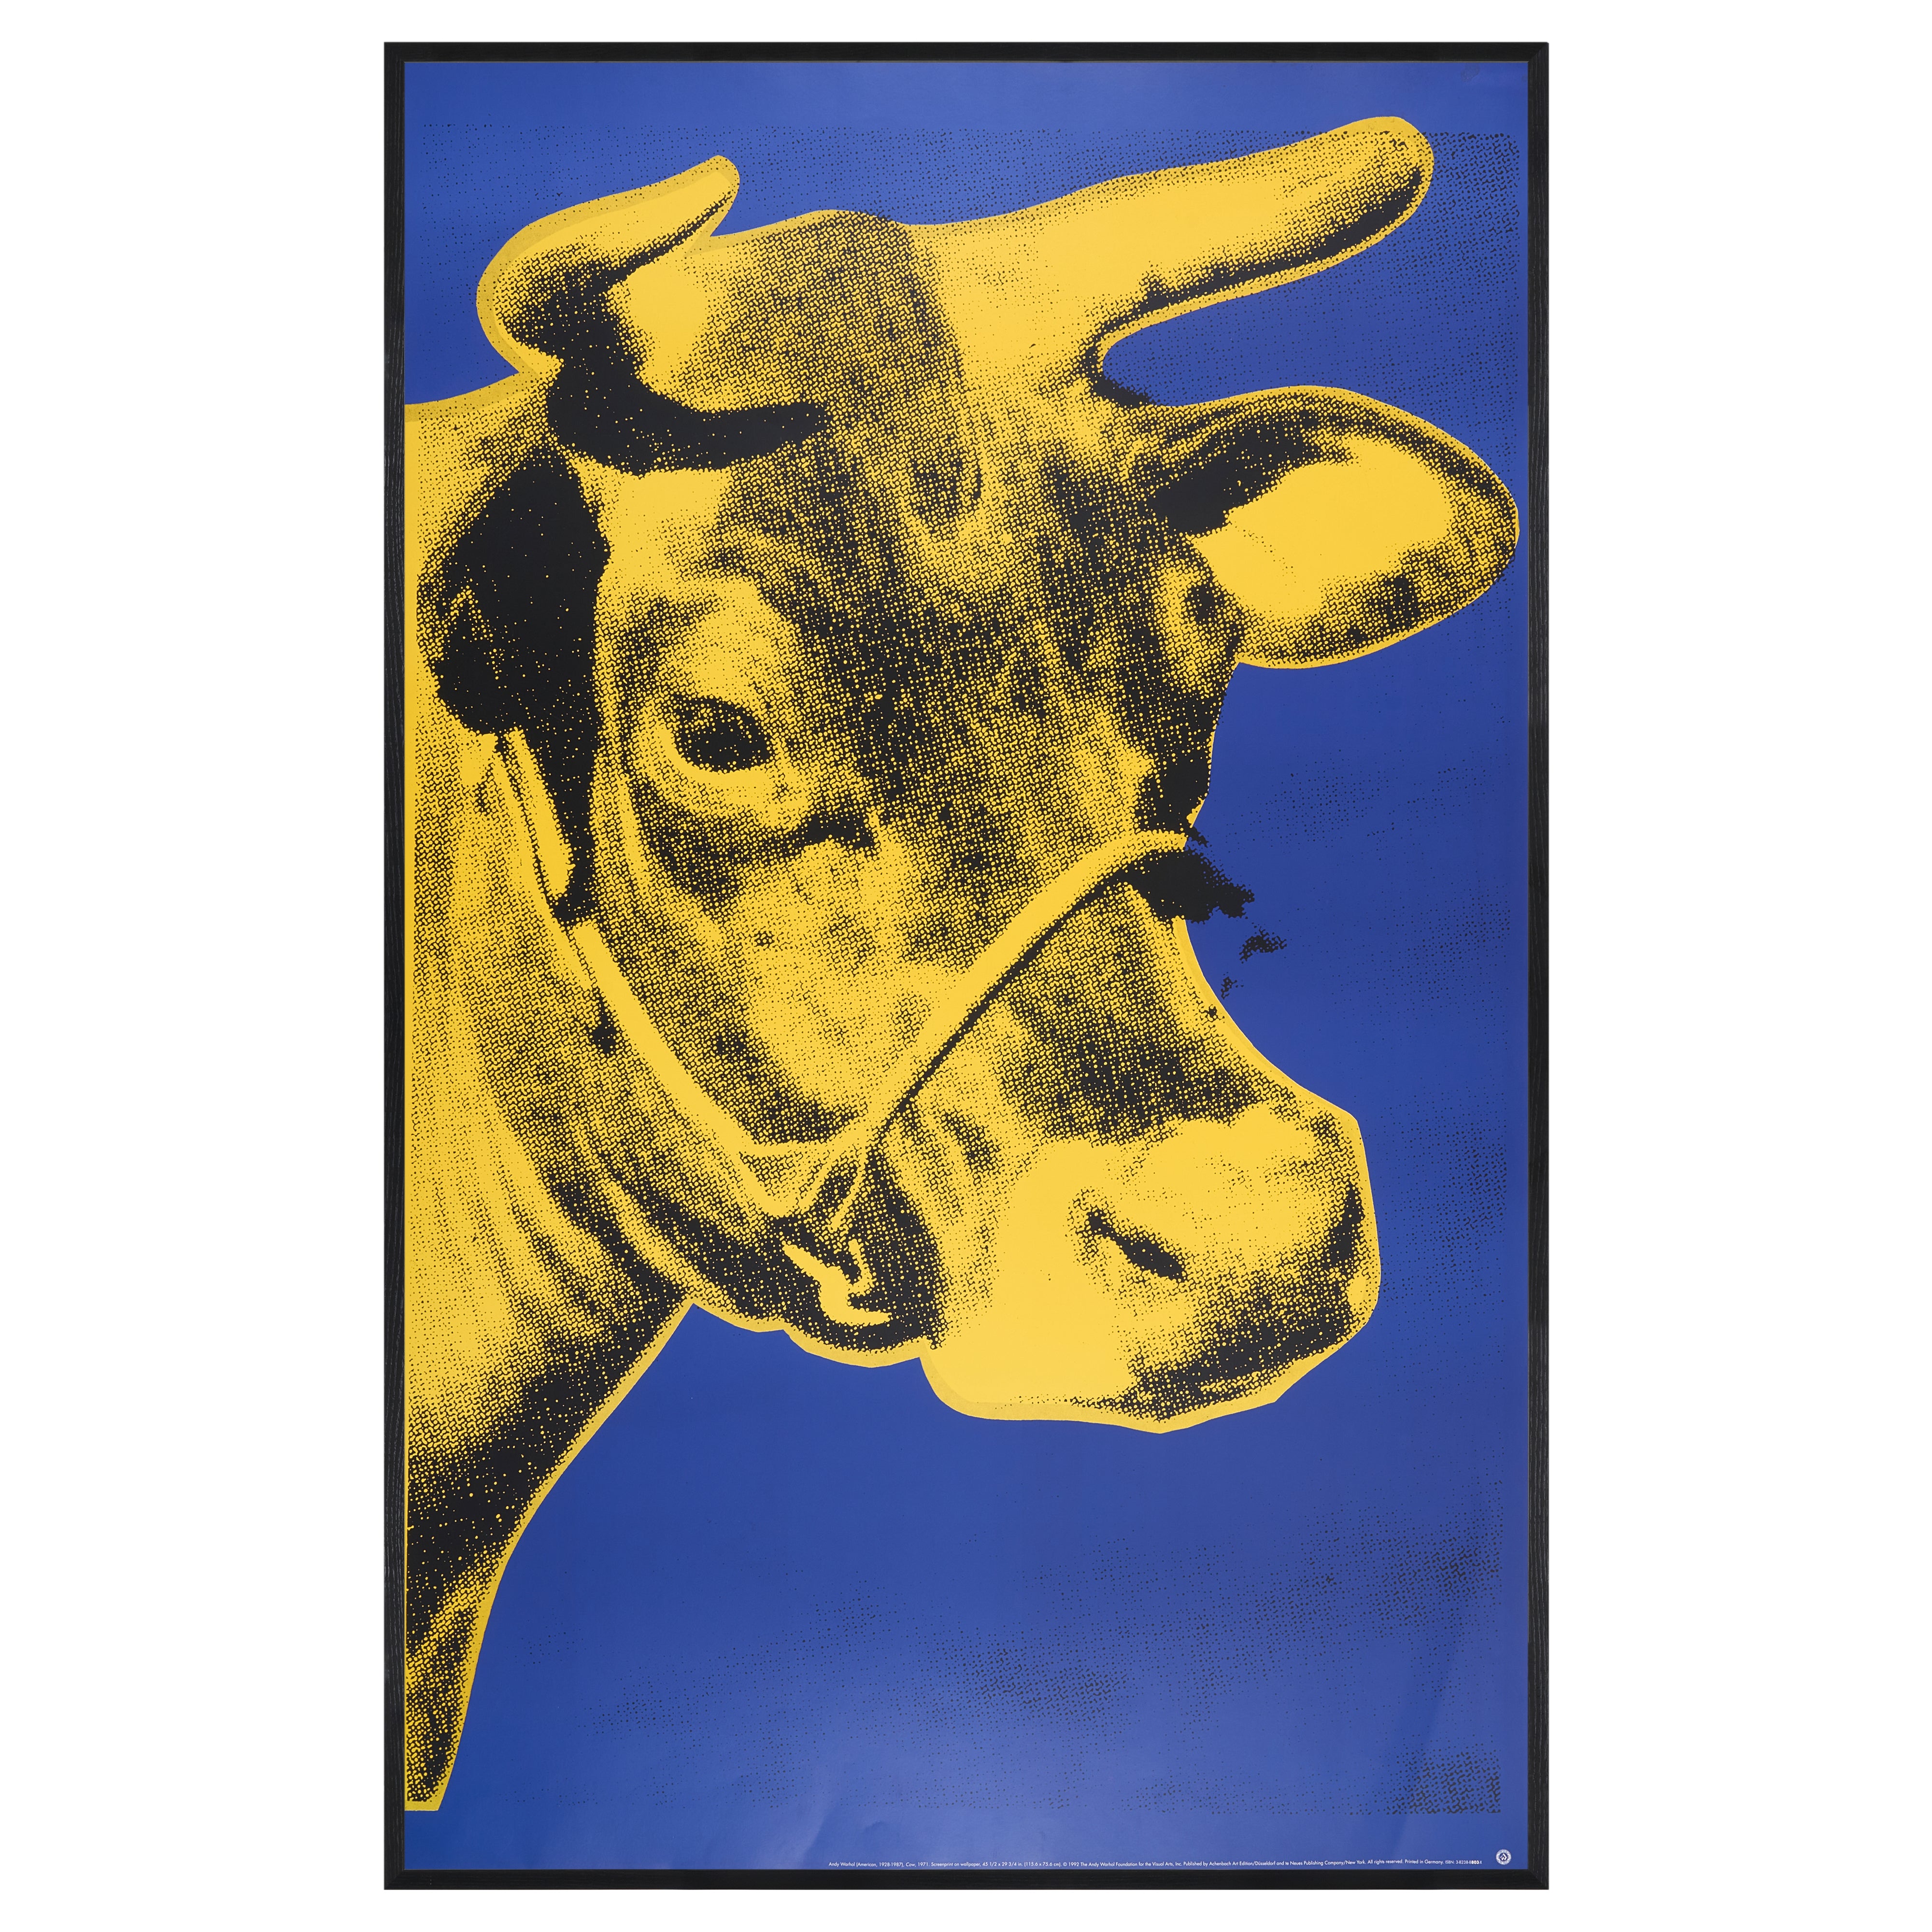 【限定10枚】Cow 1971 - Achenbach Art Edition, Dusseldolf and te Neues Publishing Copany, NEW YORK 1992 / アンディ・ウォーホル